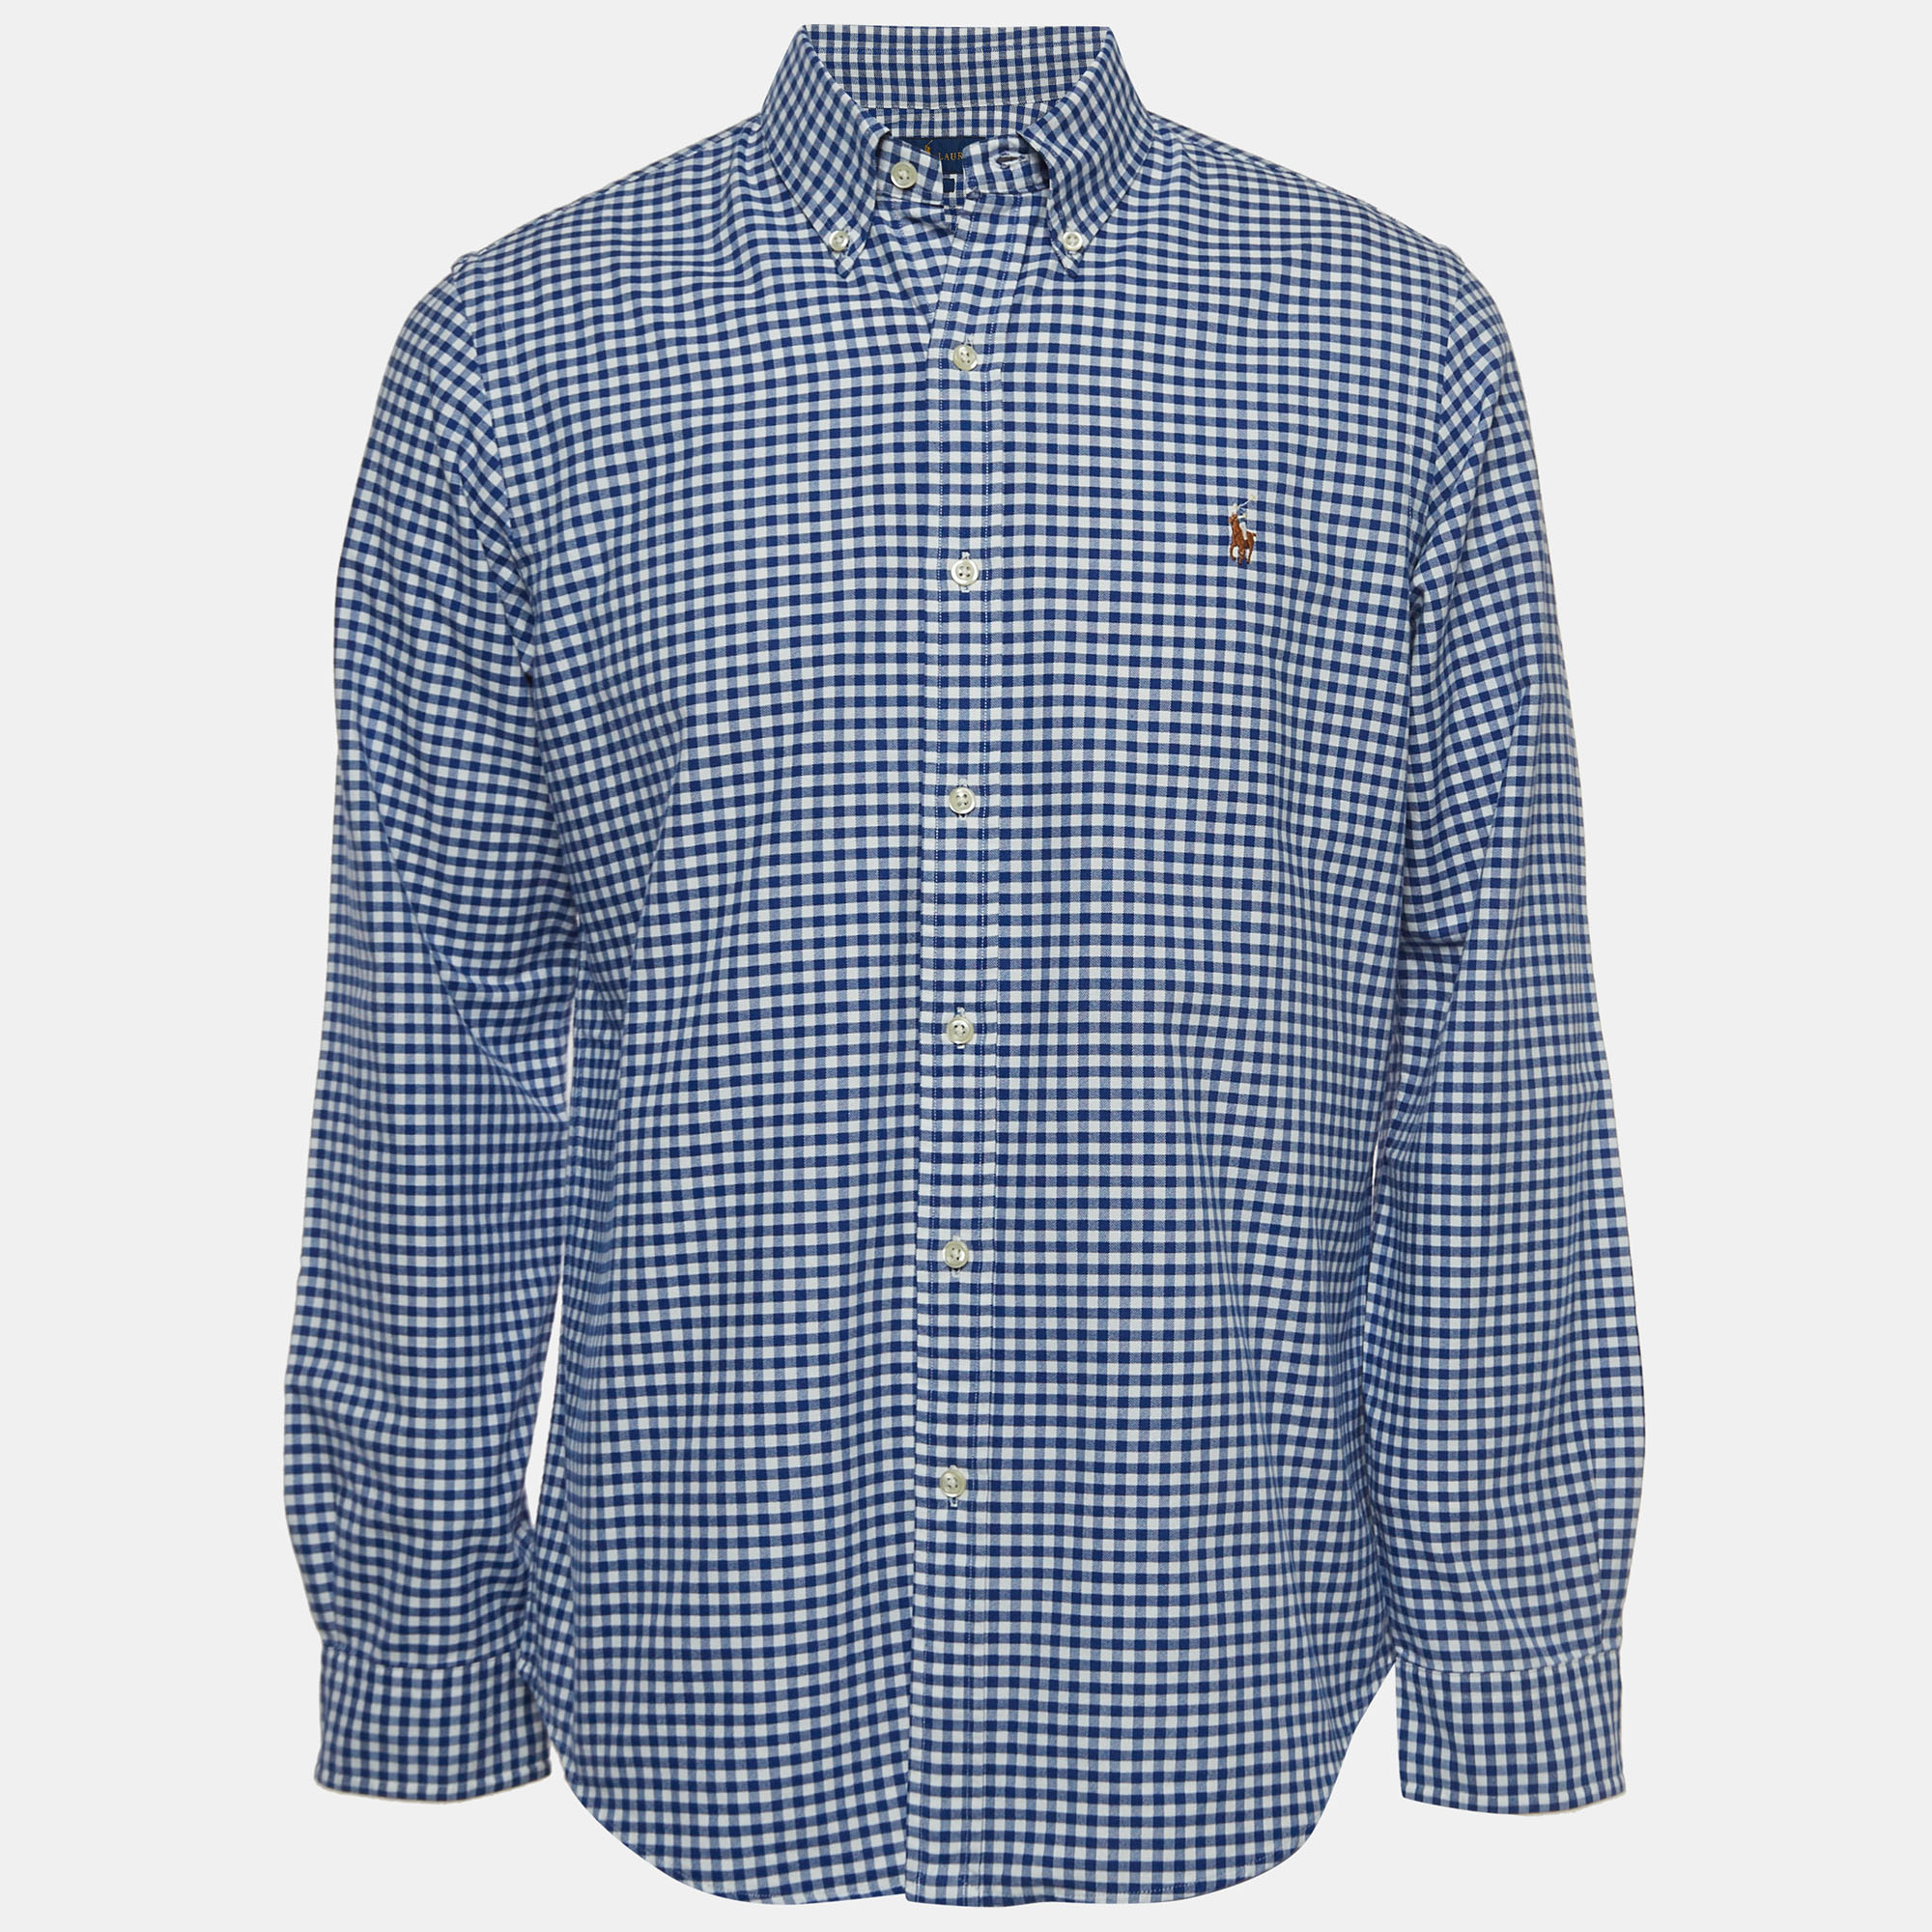 Ralph Lauren Blue Checked Cotton Button Down Slim Fit Shirt L